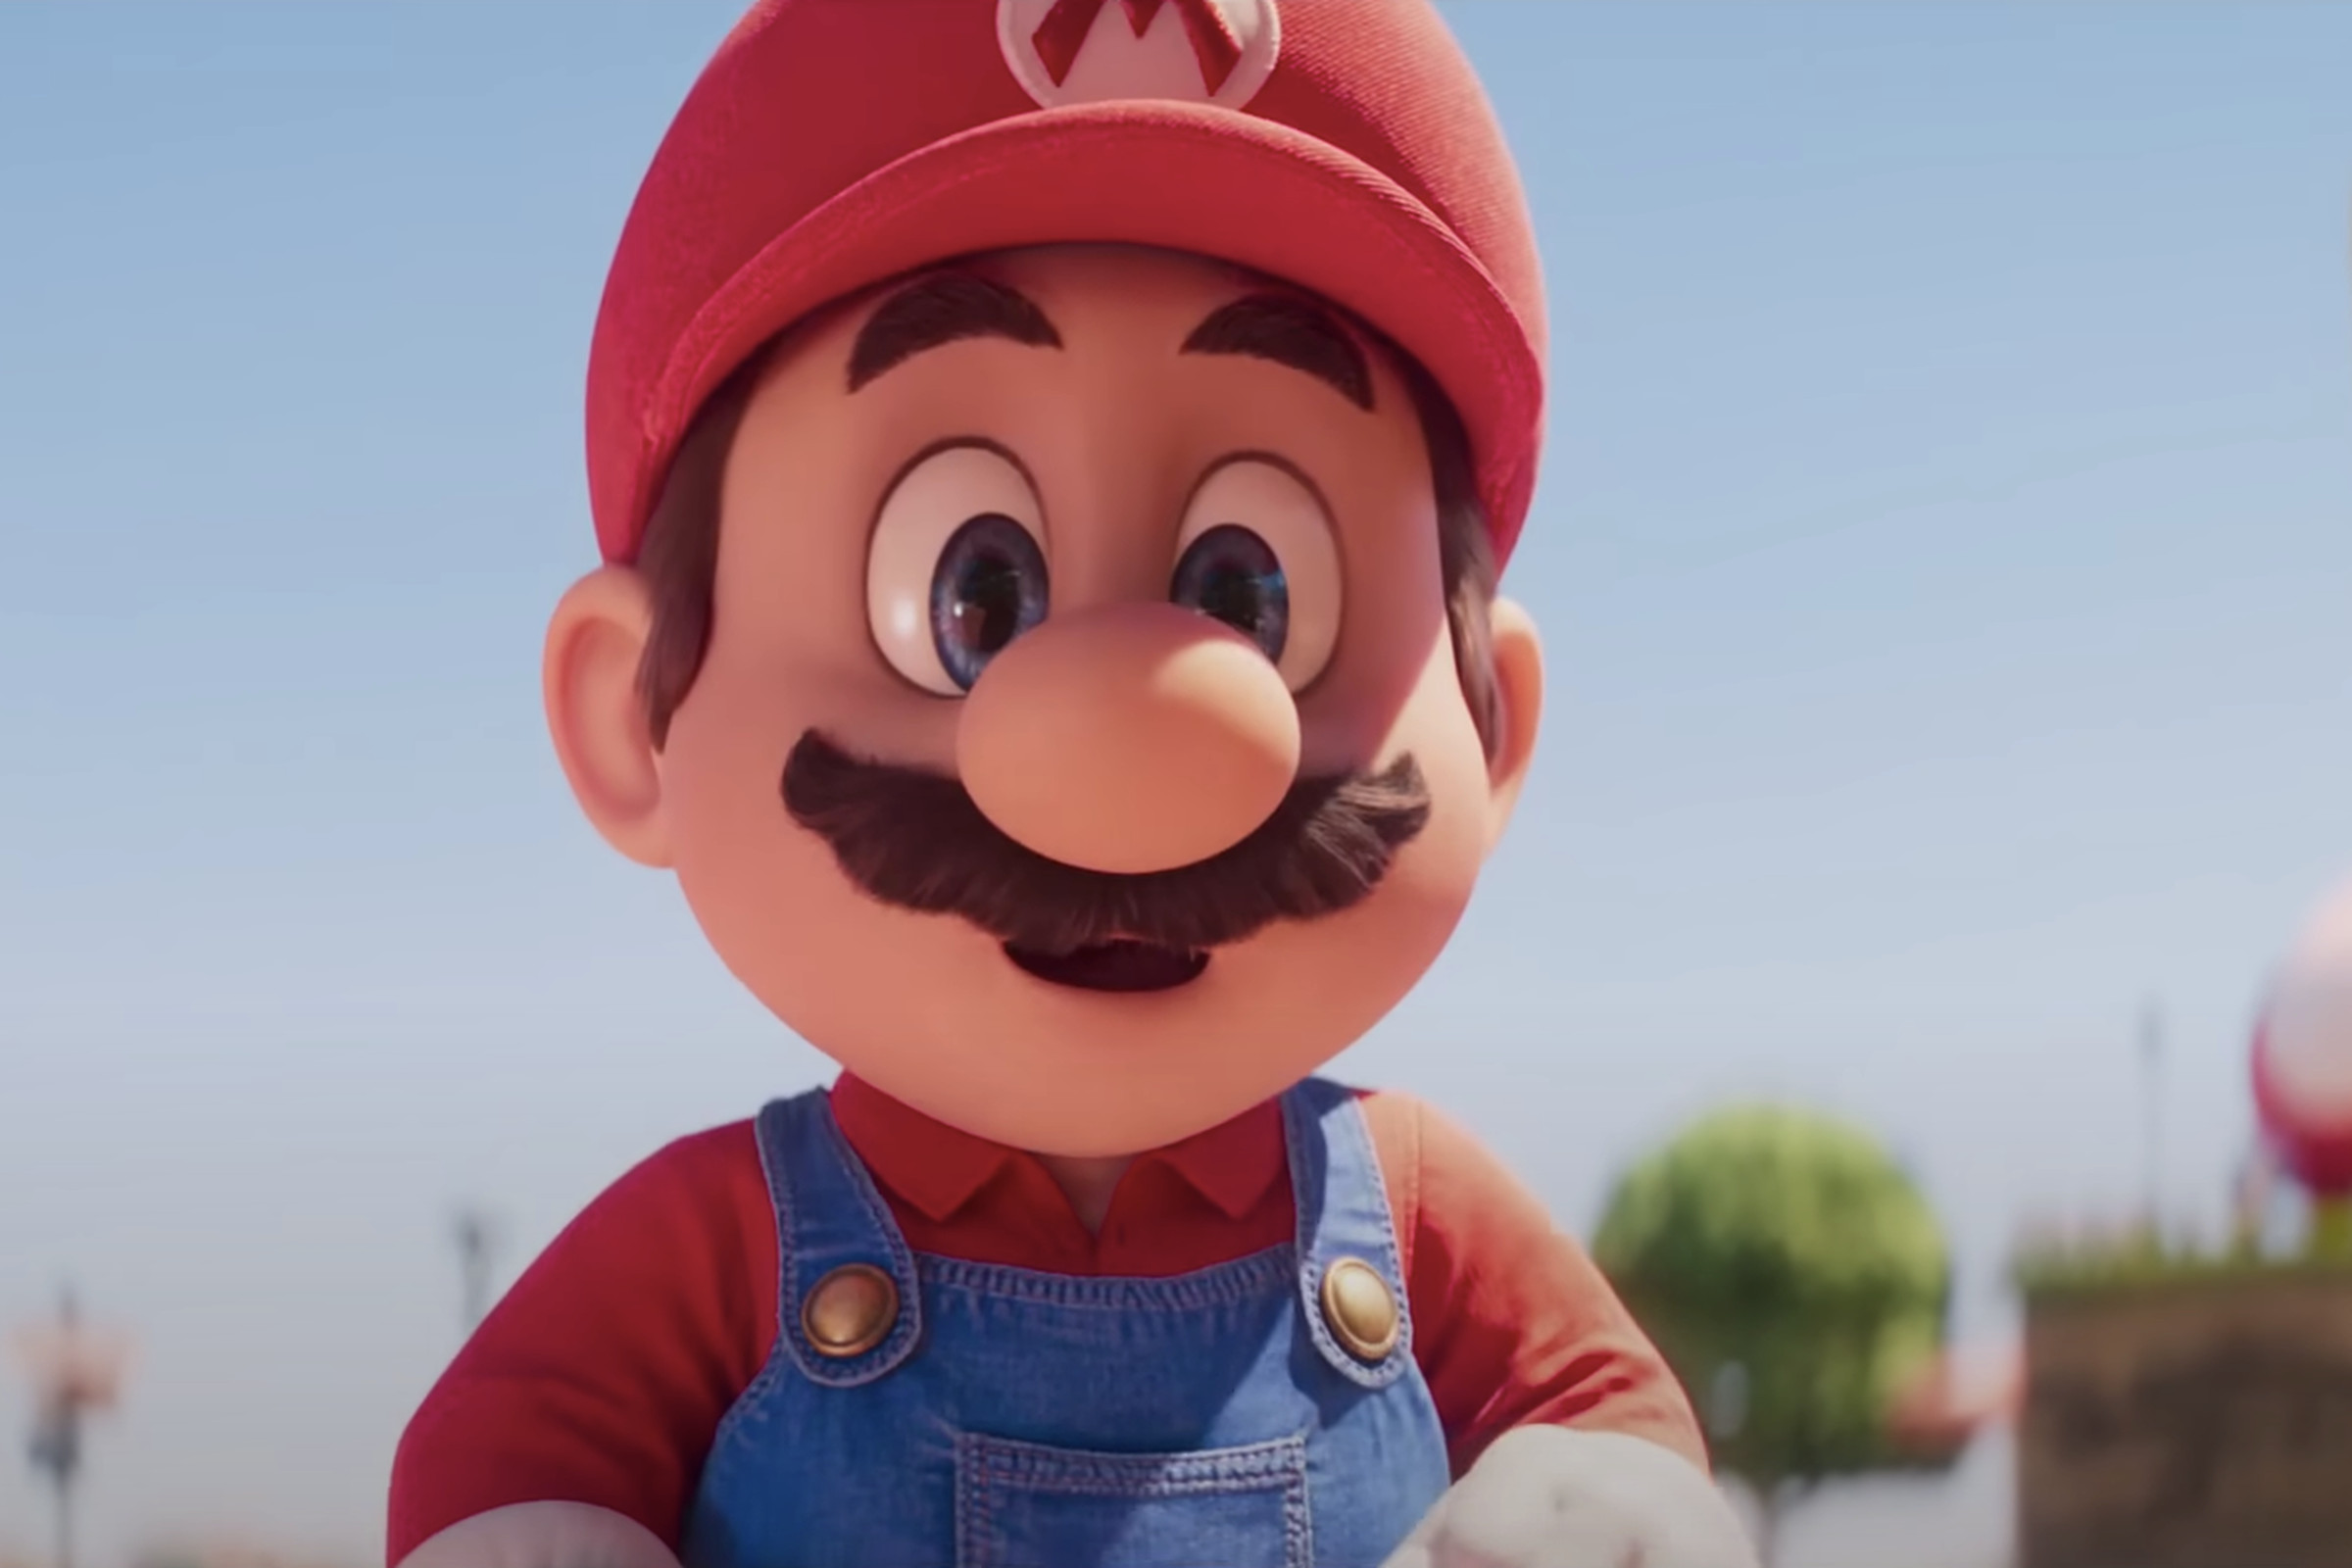 Mario in The Super Mario Bros. Movie.